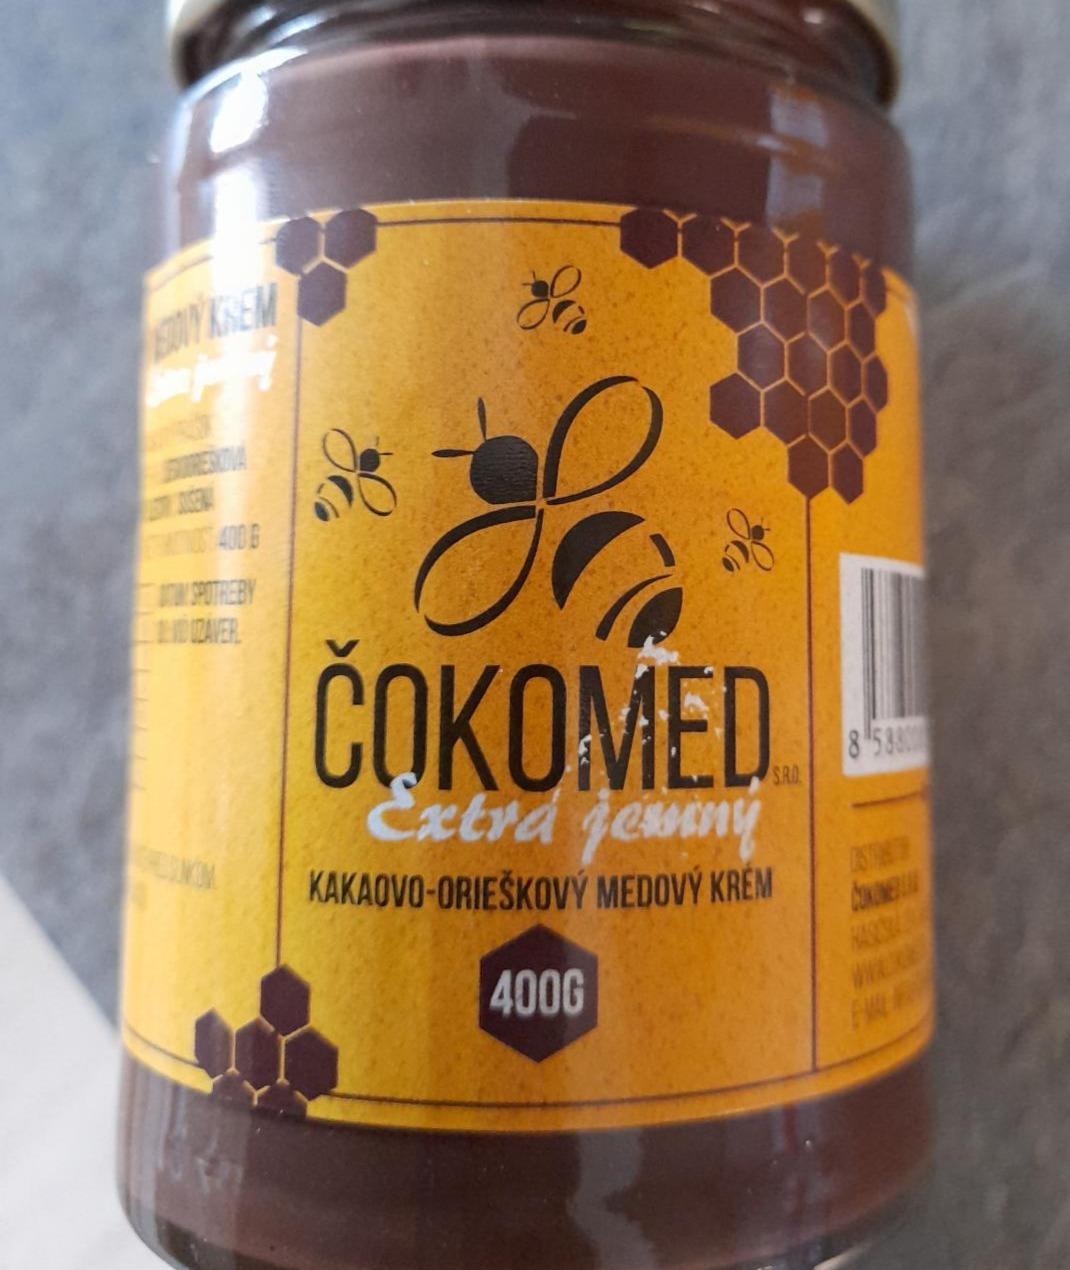 Fotografie - Čokomed extra jemný Kakaovo-orieškový medový krém